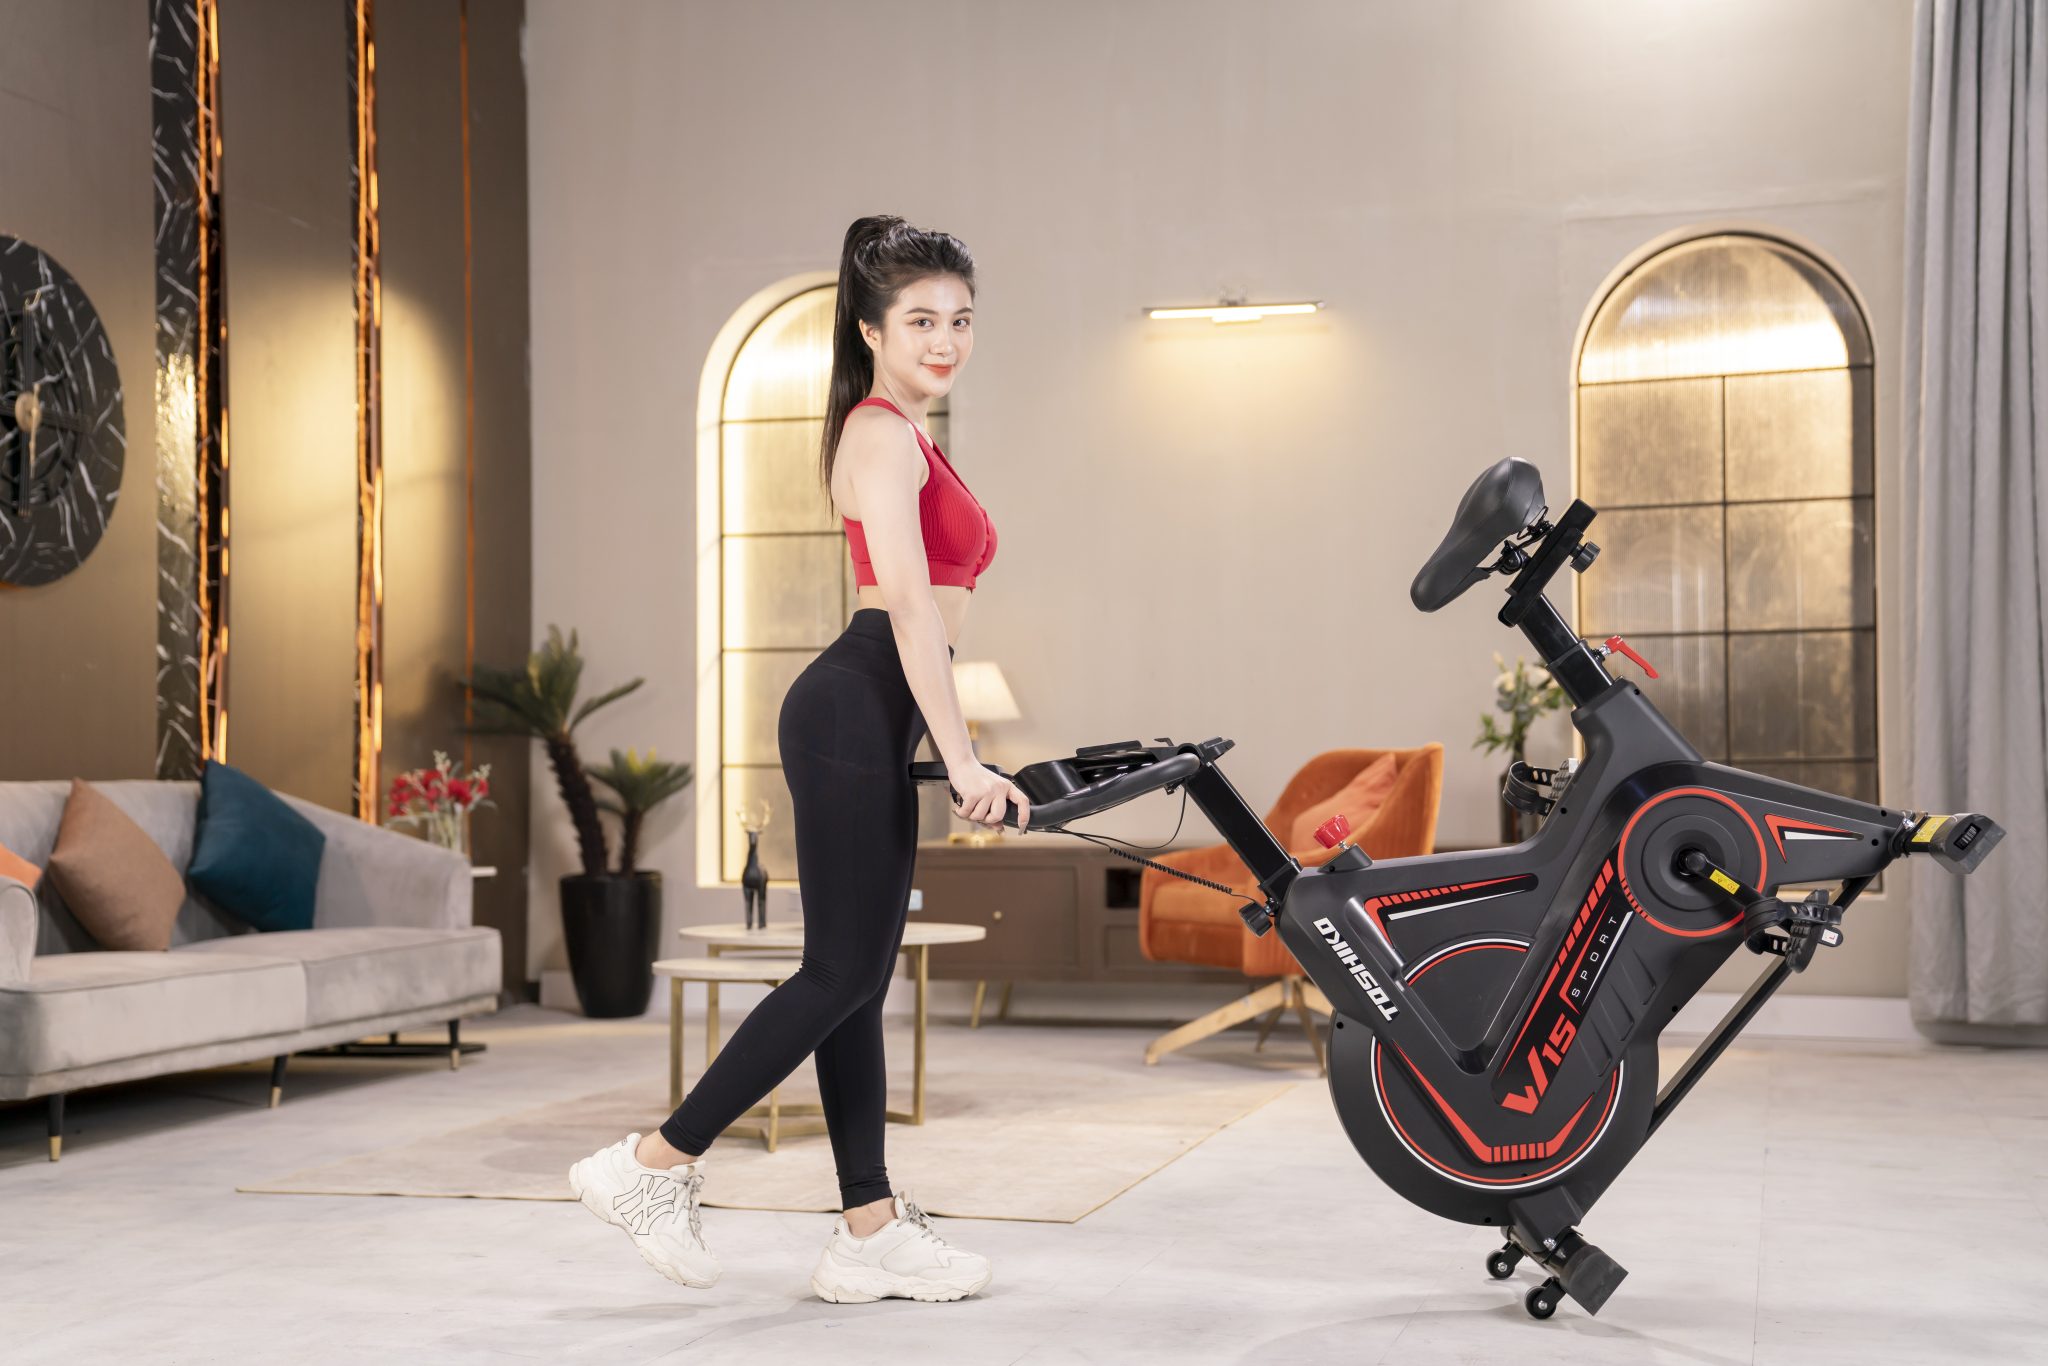 Xe đạp tập thể dục tại nhà Toshiko W15, khung xe thép chống rỉ [Lắp đặt tại nhà], phanh từ êm ái không gây ồn, điều chỉnh yên xe linh hoạt theo dáng ngồi, cảm biến nhịp tim theo nhịp đạp